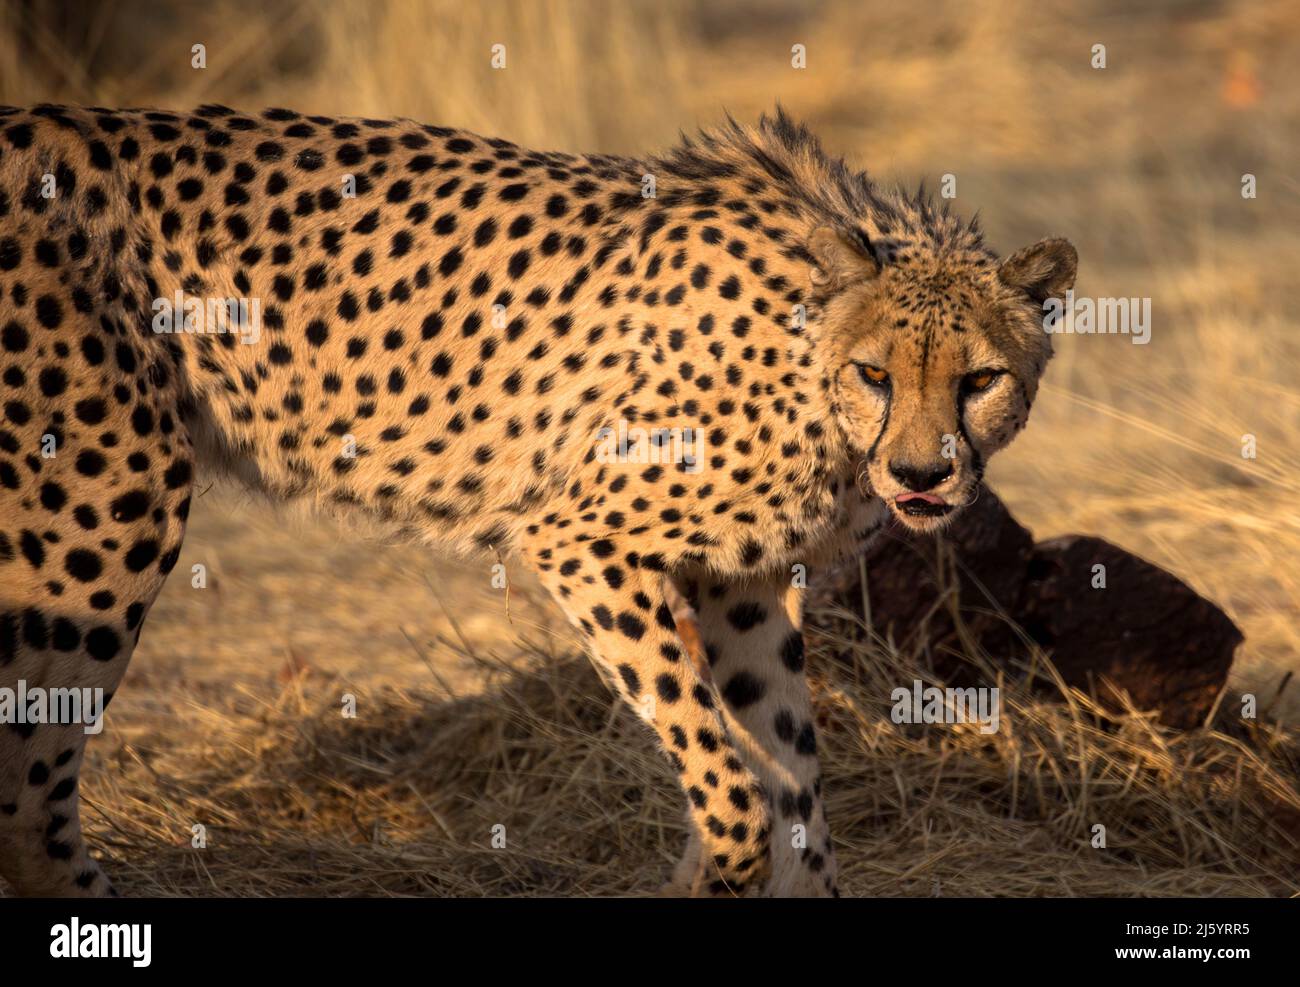 Léopard dans l'habitat naturel marche à travers la savane. Vu sur les commandes de jeu en Afrique du Sud. Gros plan. Banque D'Images